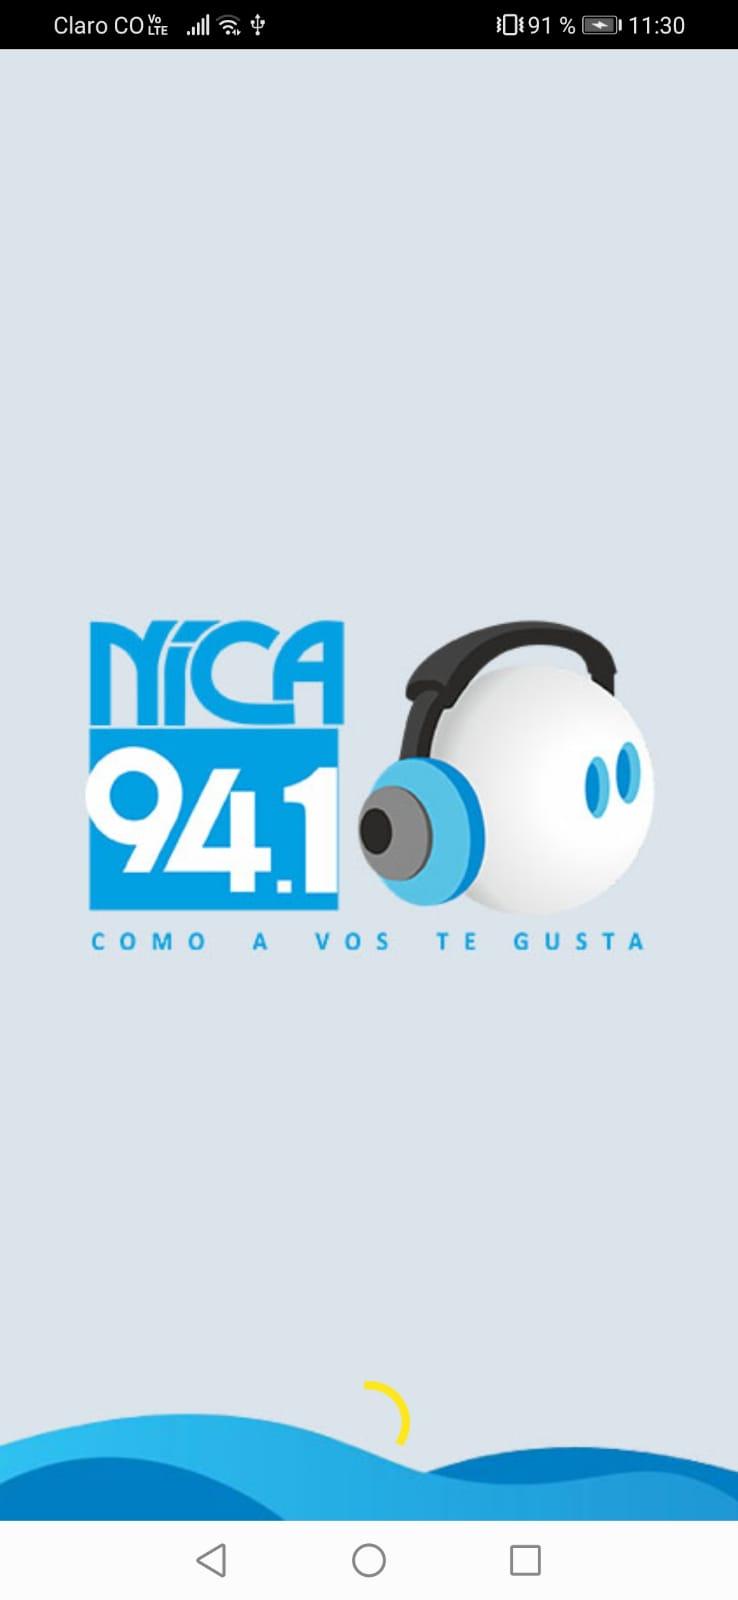 Radio Nica 94.10 FM APK للاندرويد تنزيل